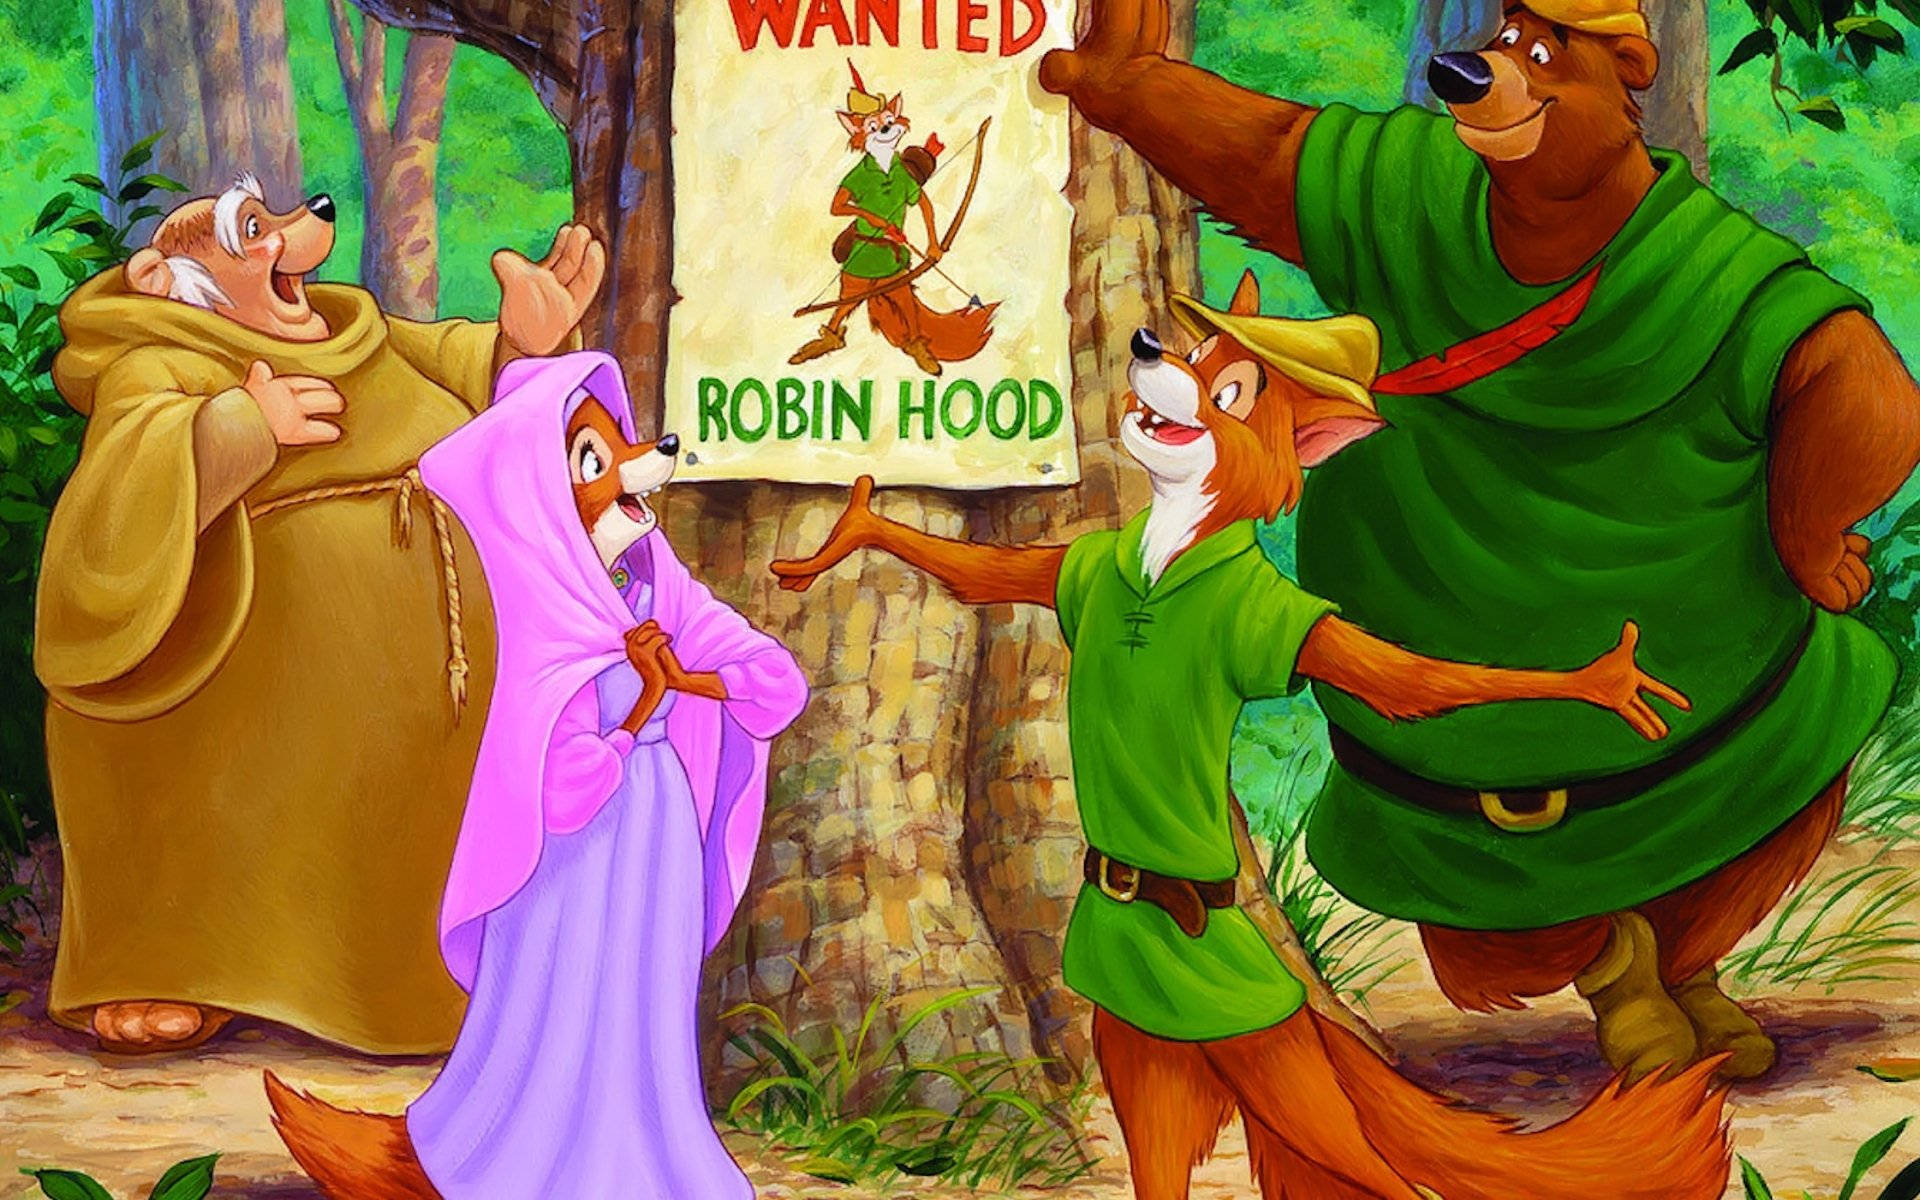 Robin Hood Cartoon Wanted Poster